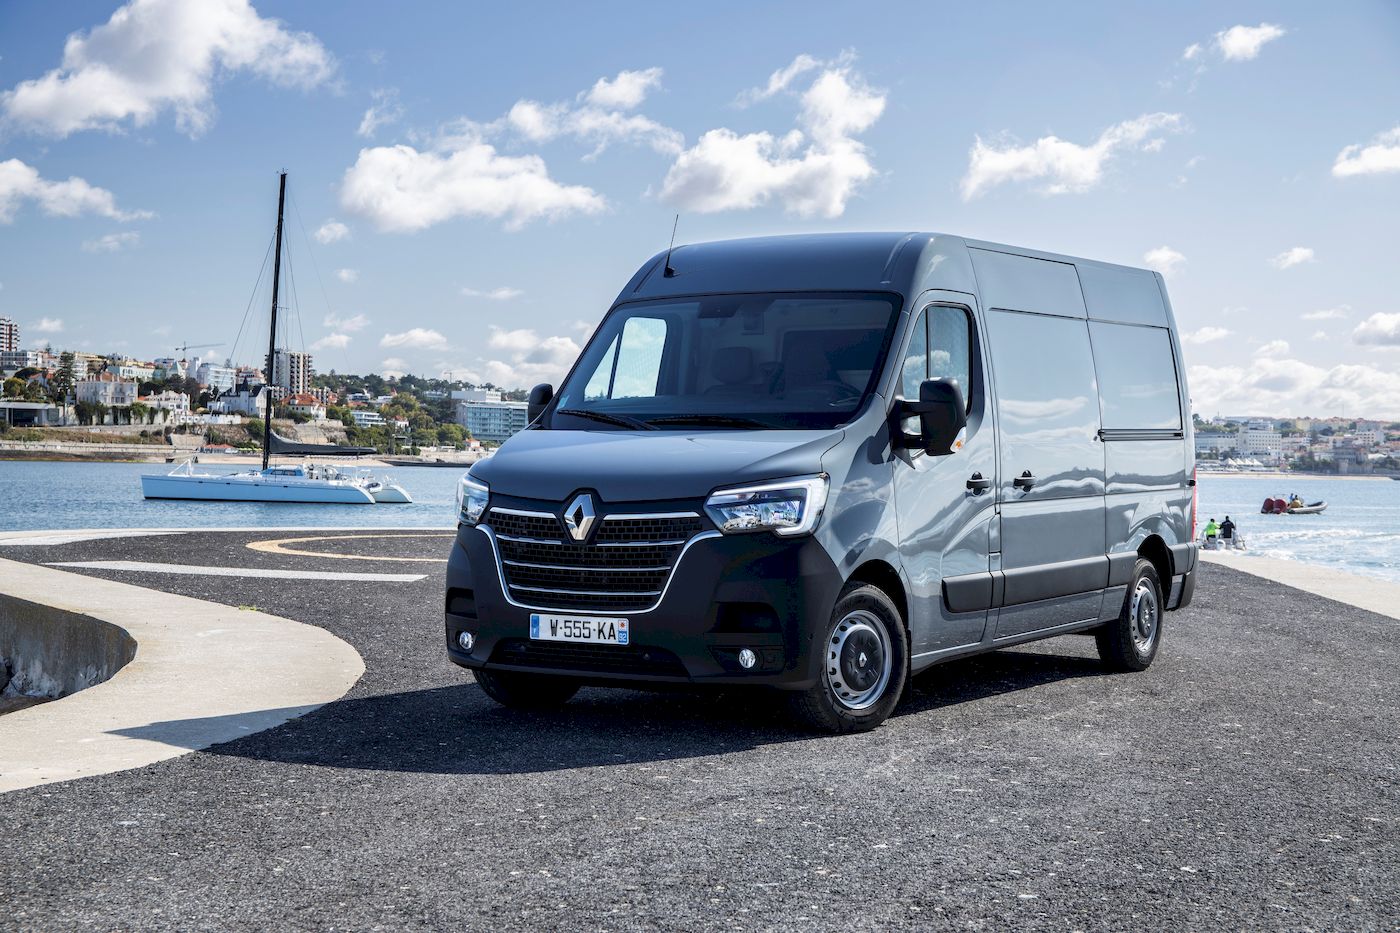 Llega a Alcalá de Henares la Caravana de vehículos adaptados de Renault